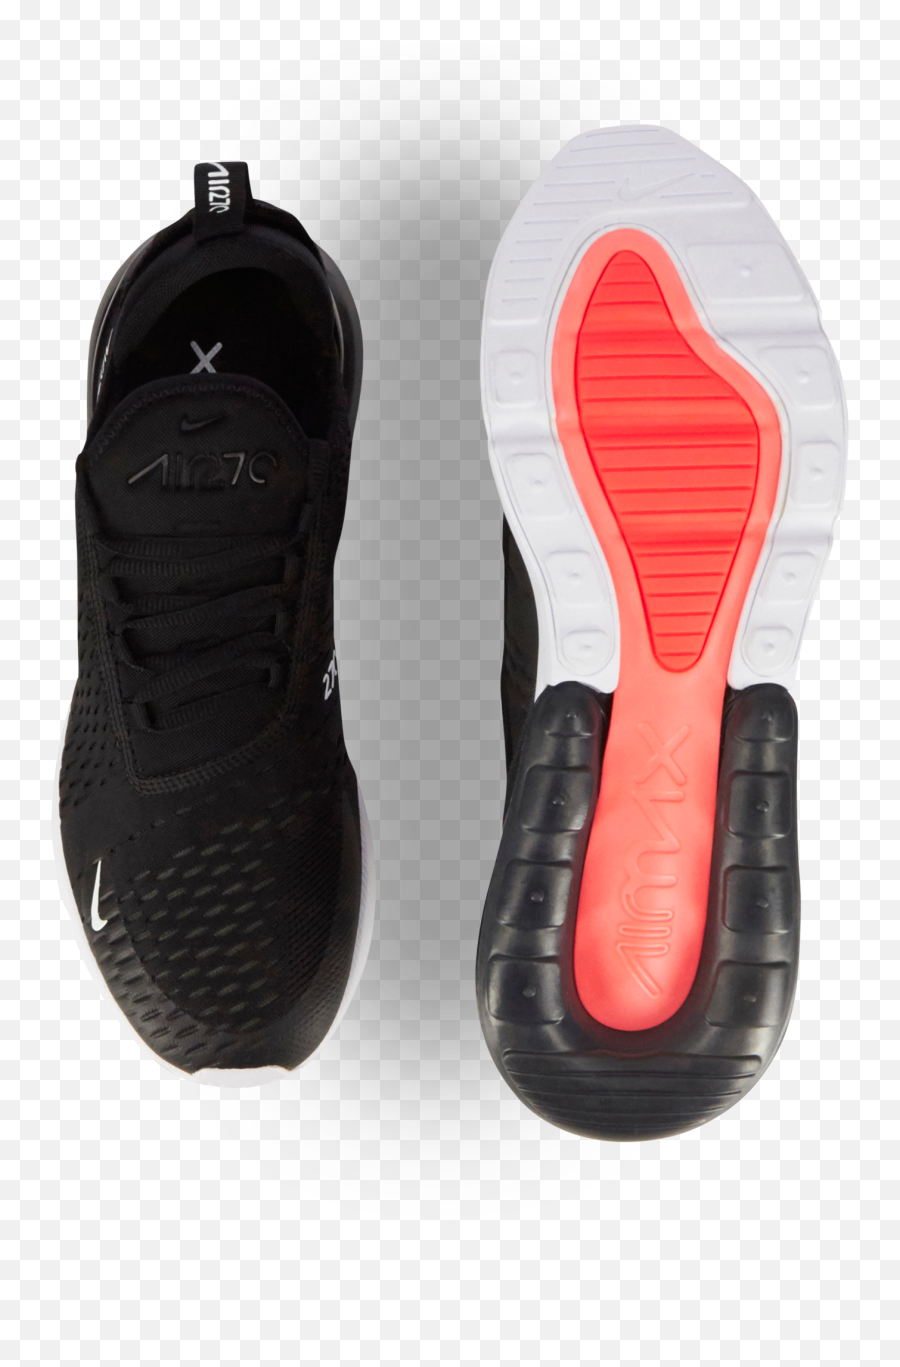 Nike Air Max 270 Noir Et Argent - Homme Air Max 270 Noir Png,Icon 1000 Elsinore Hp Boots